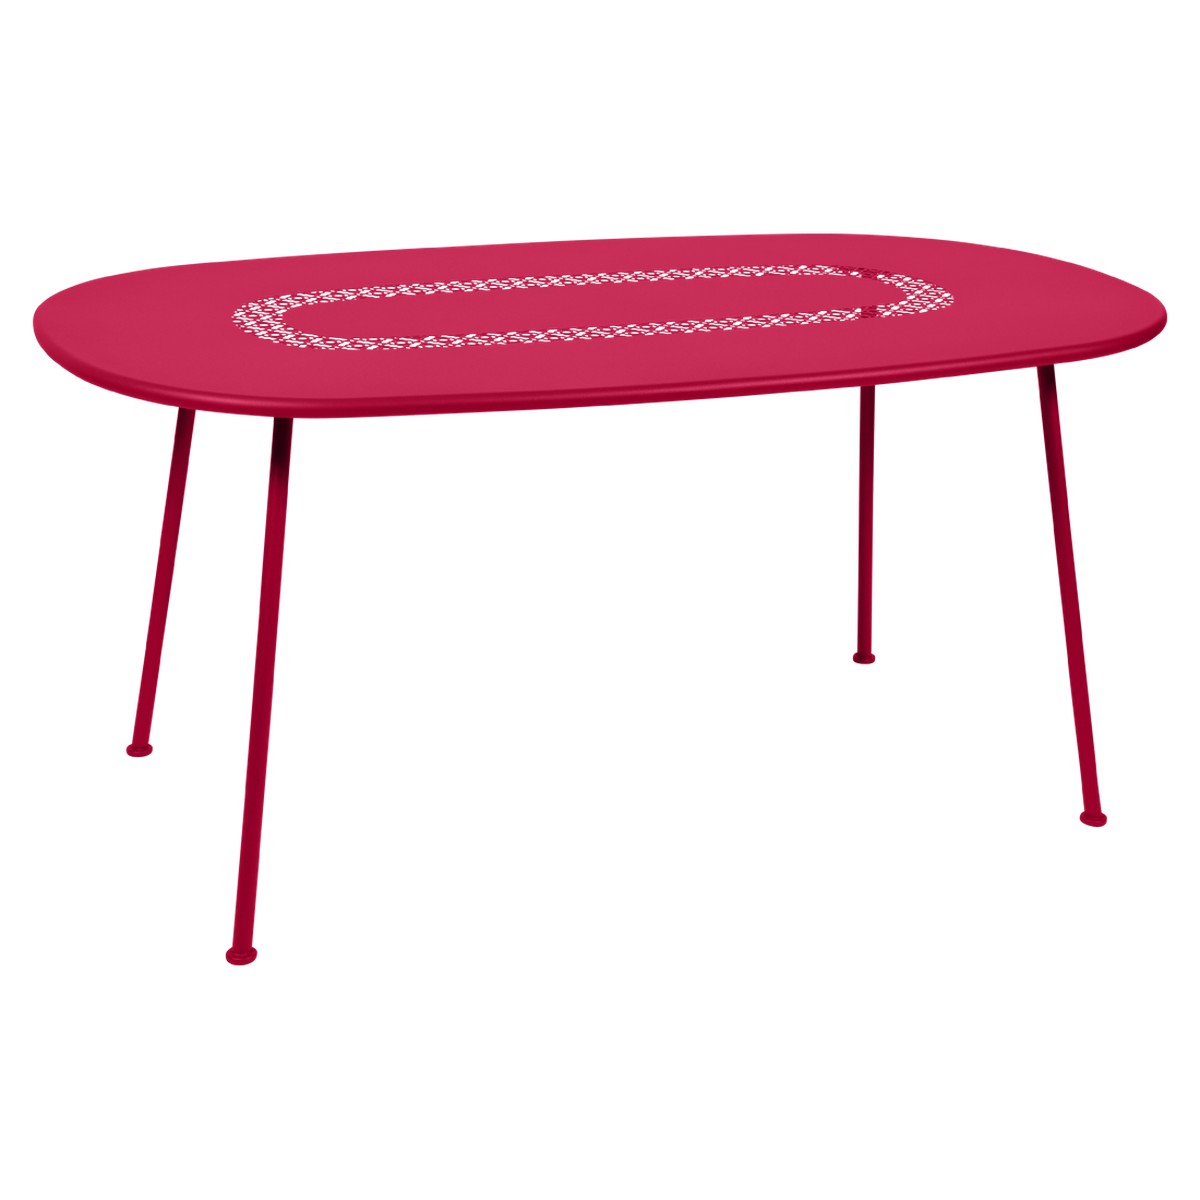 Fermob Lorette Table Lorette oval Rouge rose bonbon L 160 x l 90 x H74cm